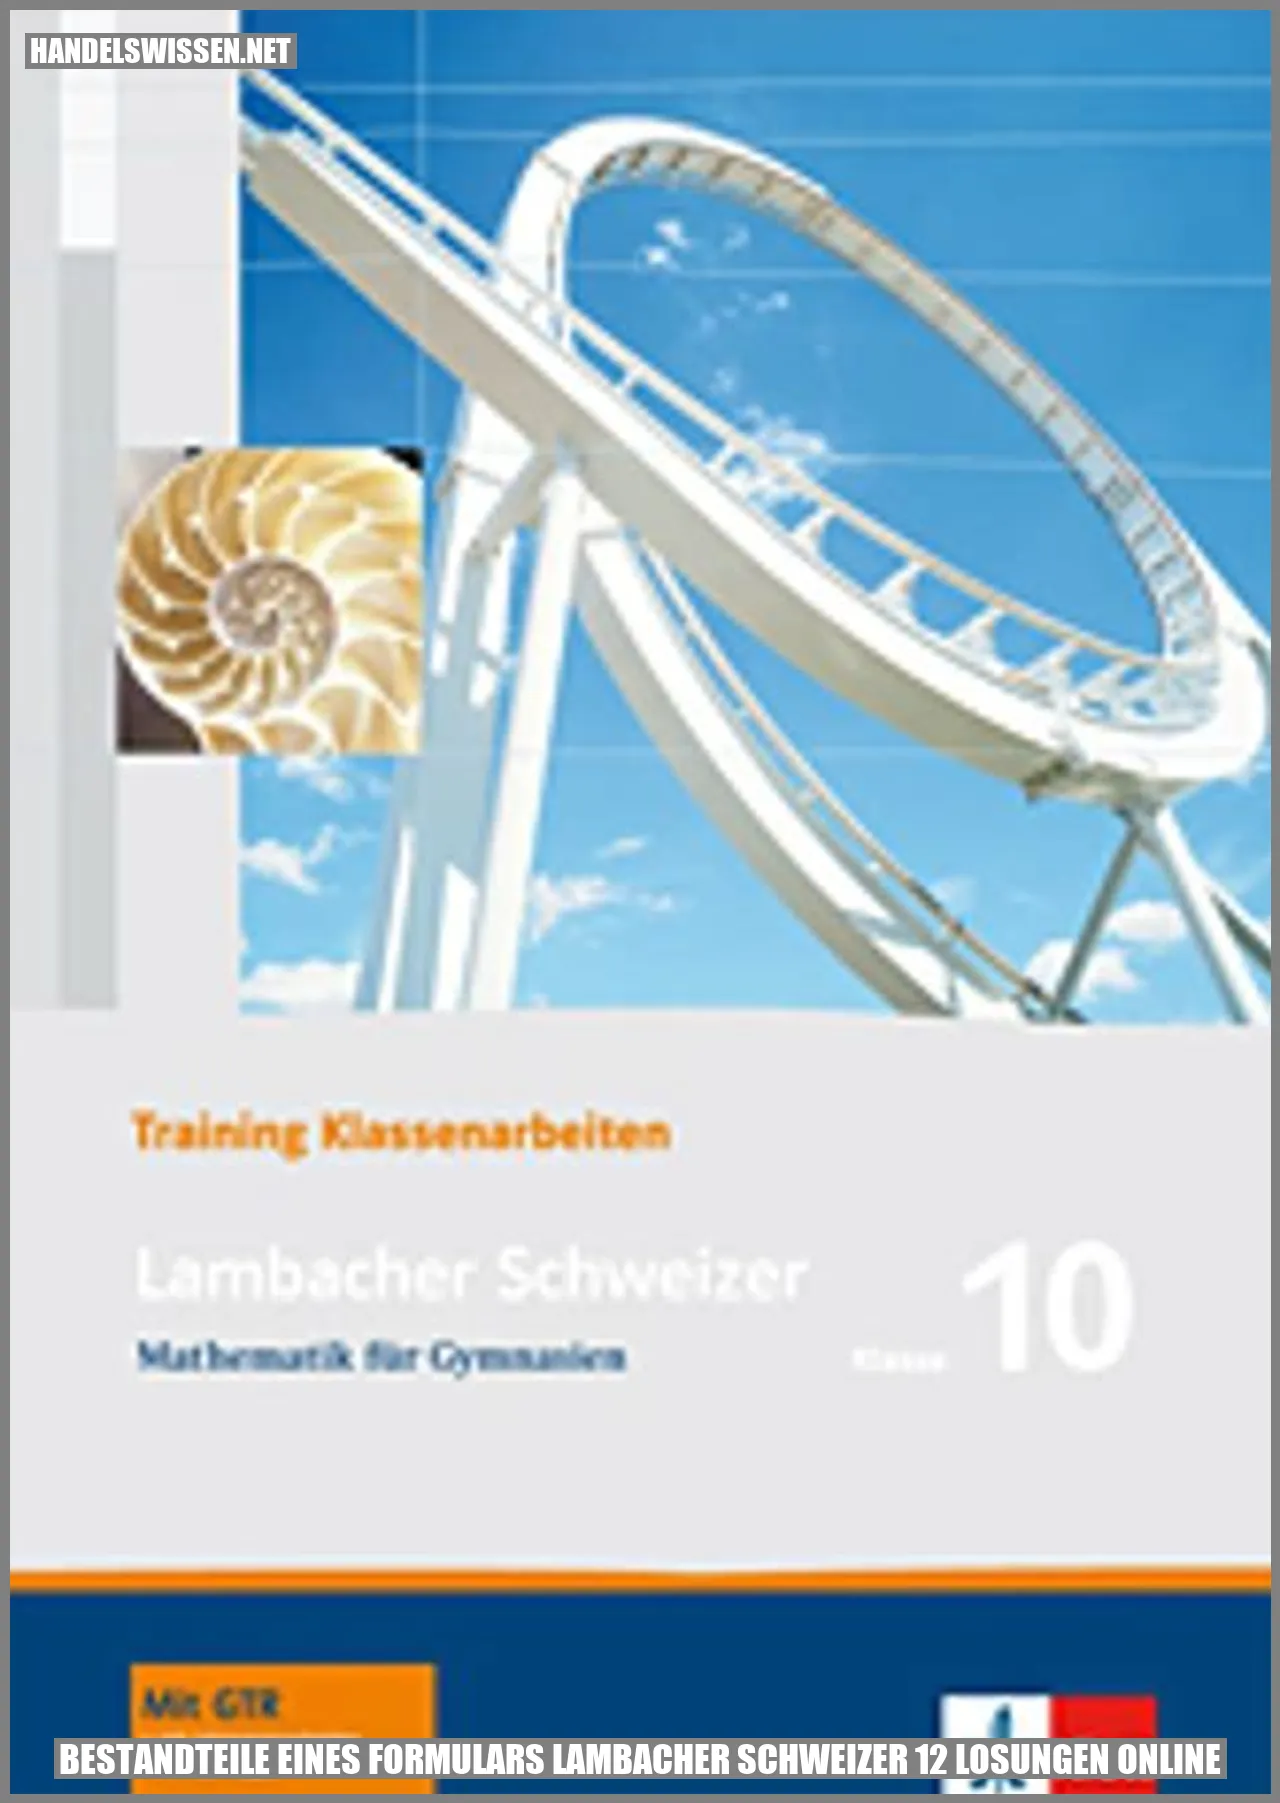 Bestandteile eines Formulars Lambacher Schweizer 12 Lösungen Online